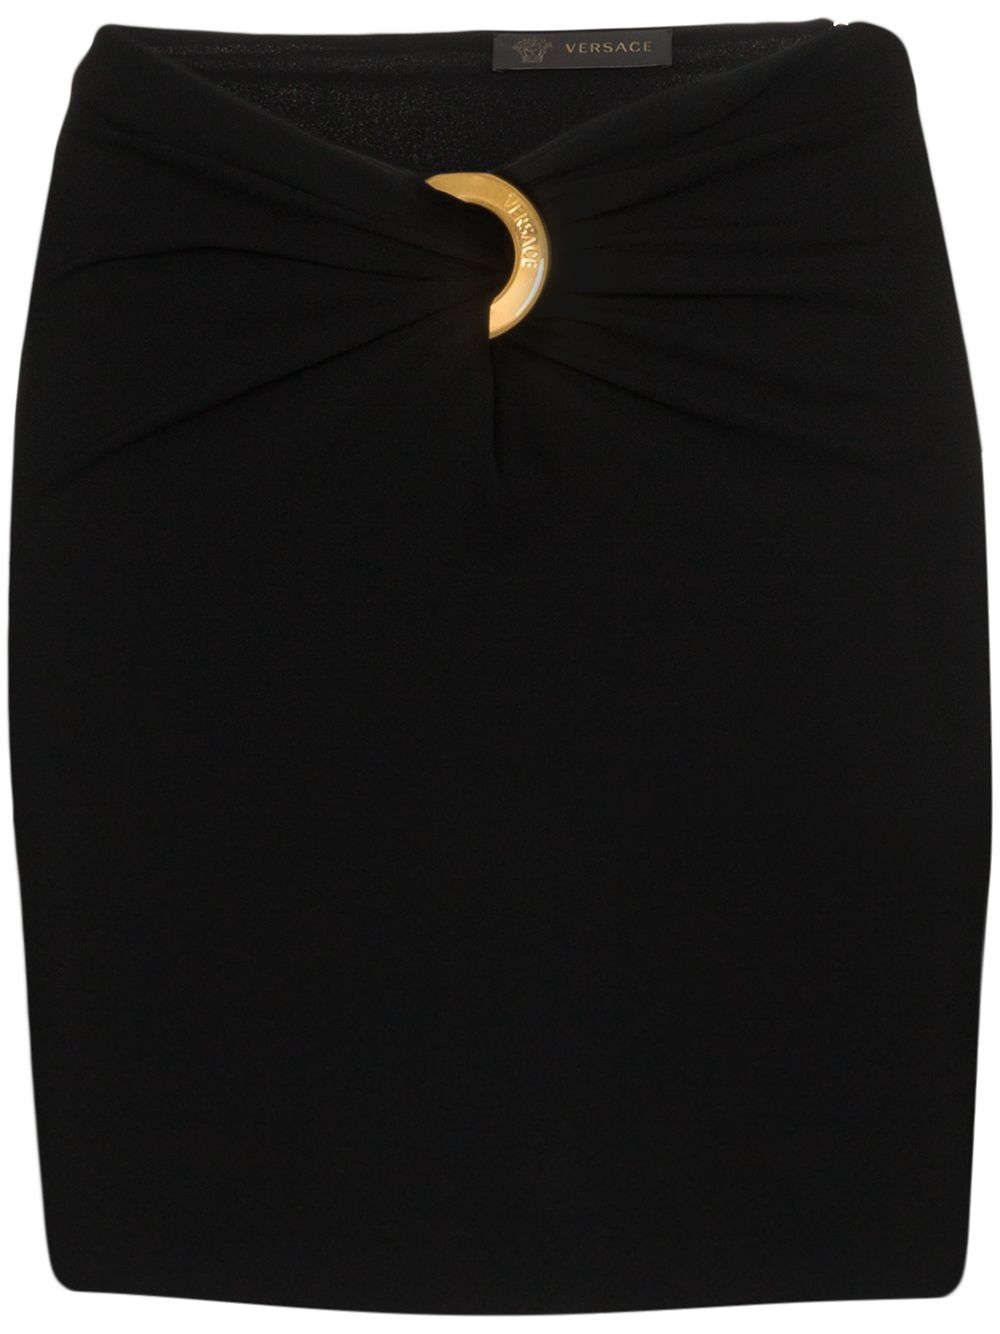 фото Versace юбка со сборками и логотипом